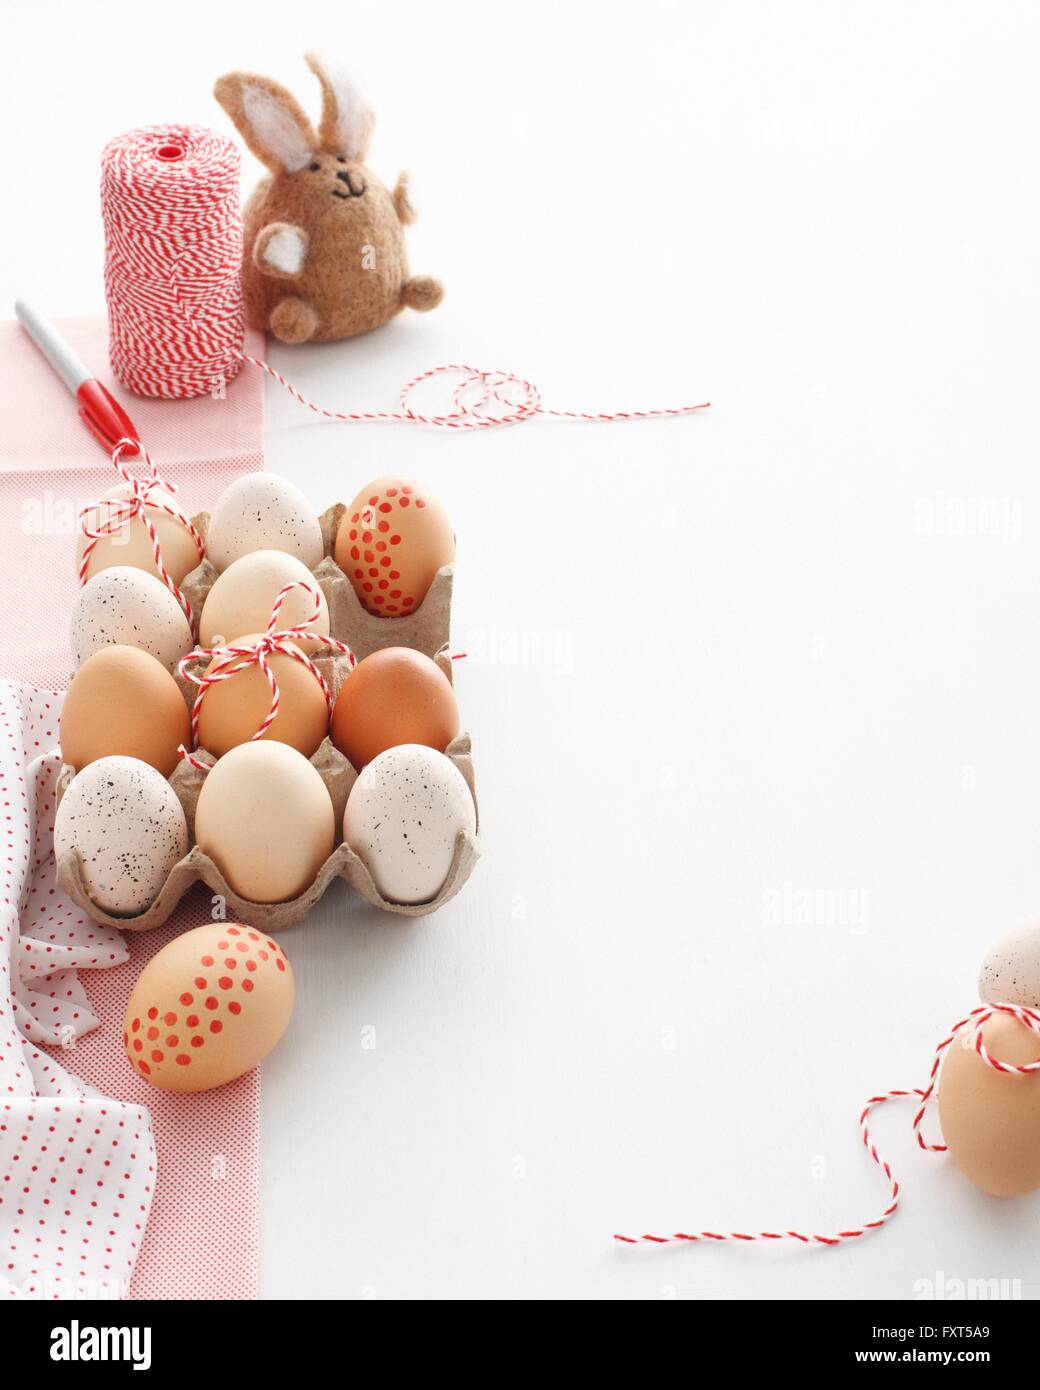 Casa de cartón decorado de huevos de pascua y el conejo de Pascua en el cuadro blanco Foto de stock